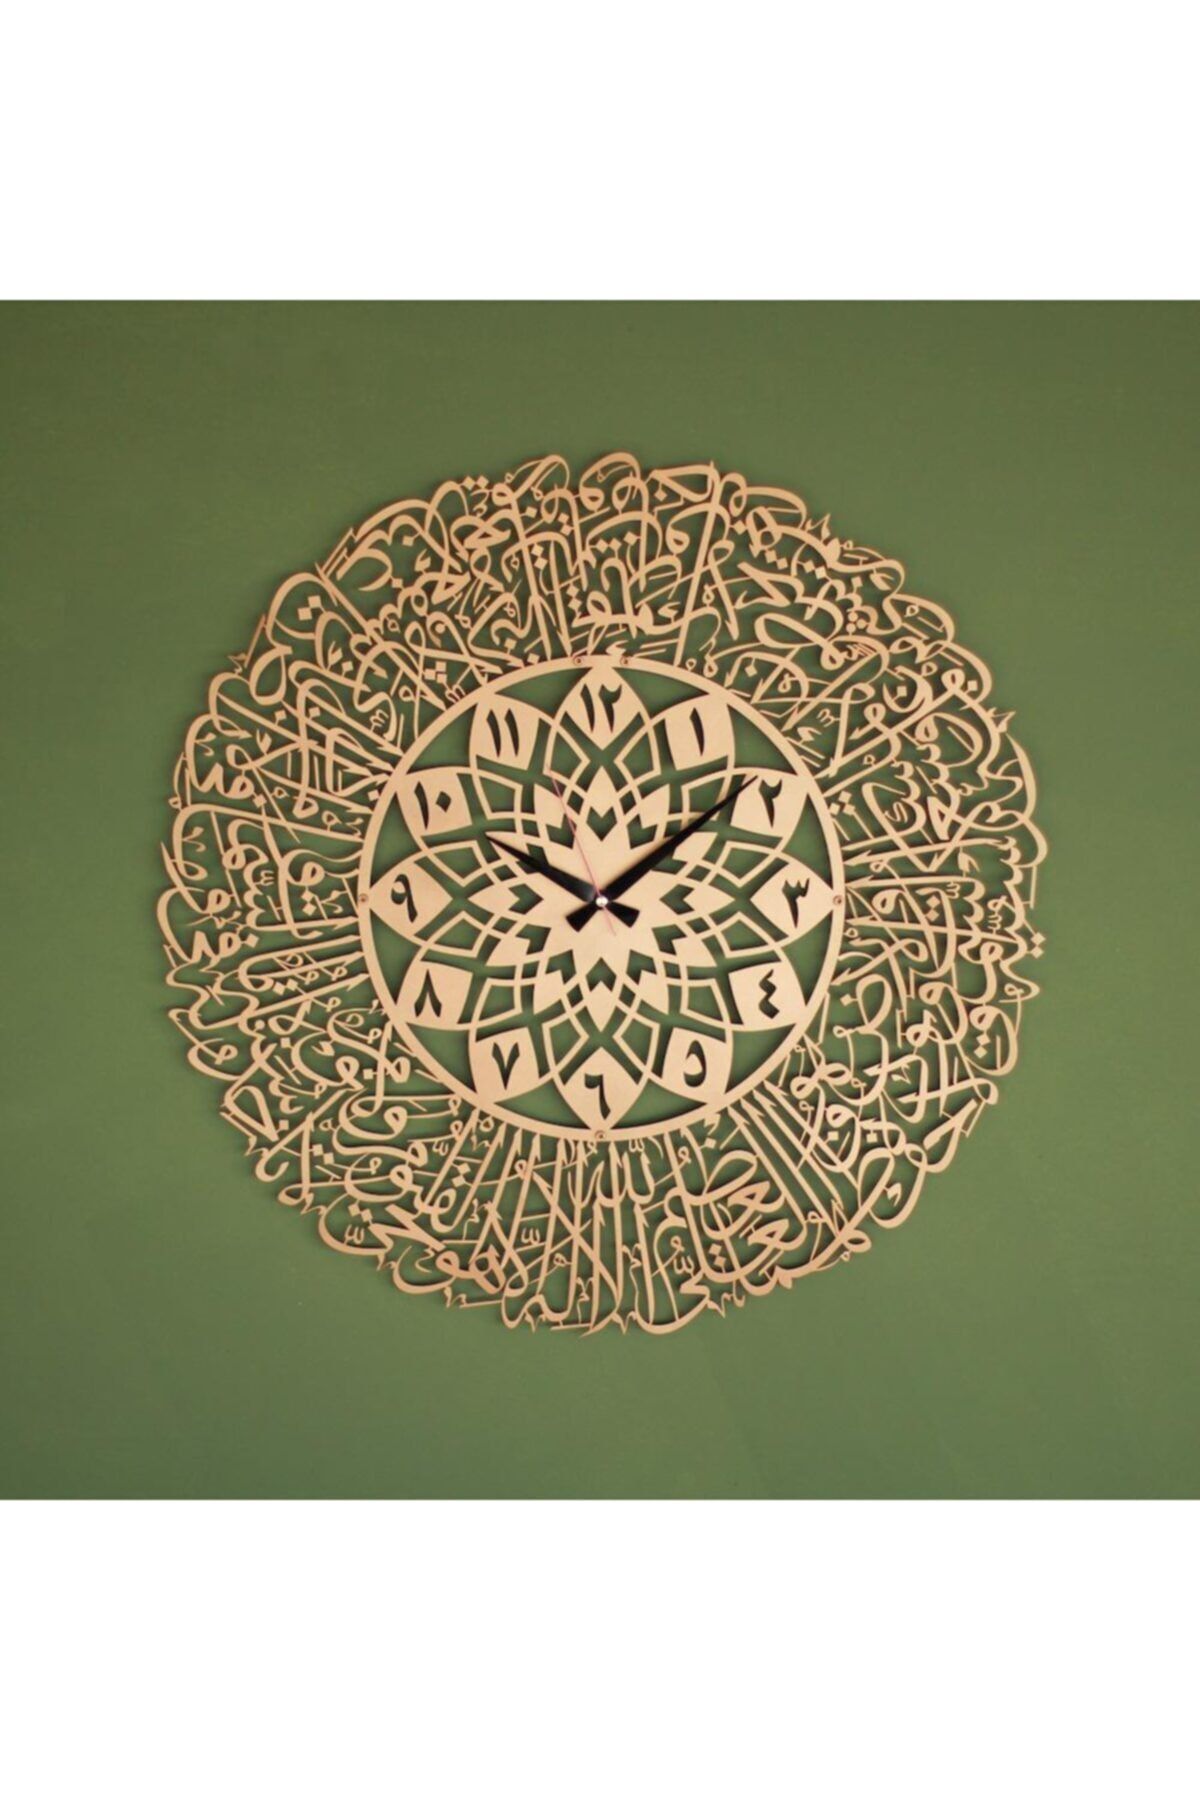 Islamic wall art Ayetel Kürsi Arapça Rakamlı Islami Duvar Saati, Ayet-el Kürsü Işlemeli Saat, Islami Desenli Saat